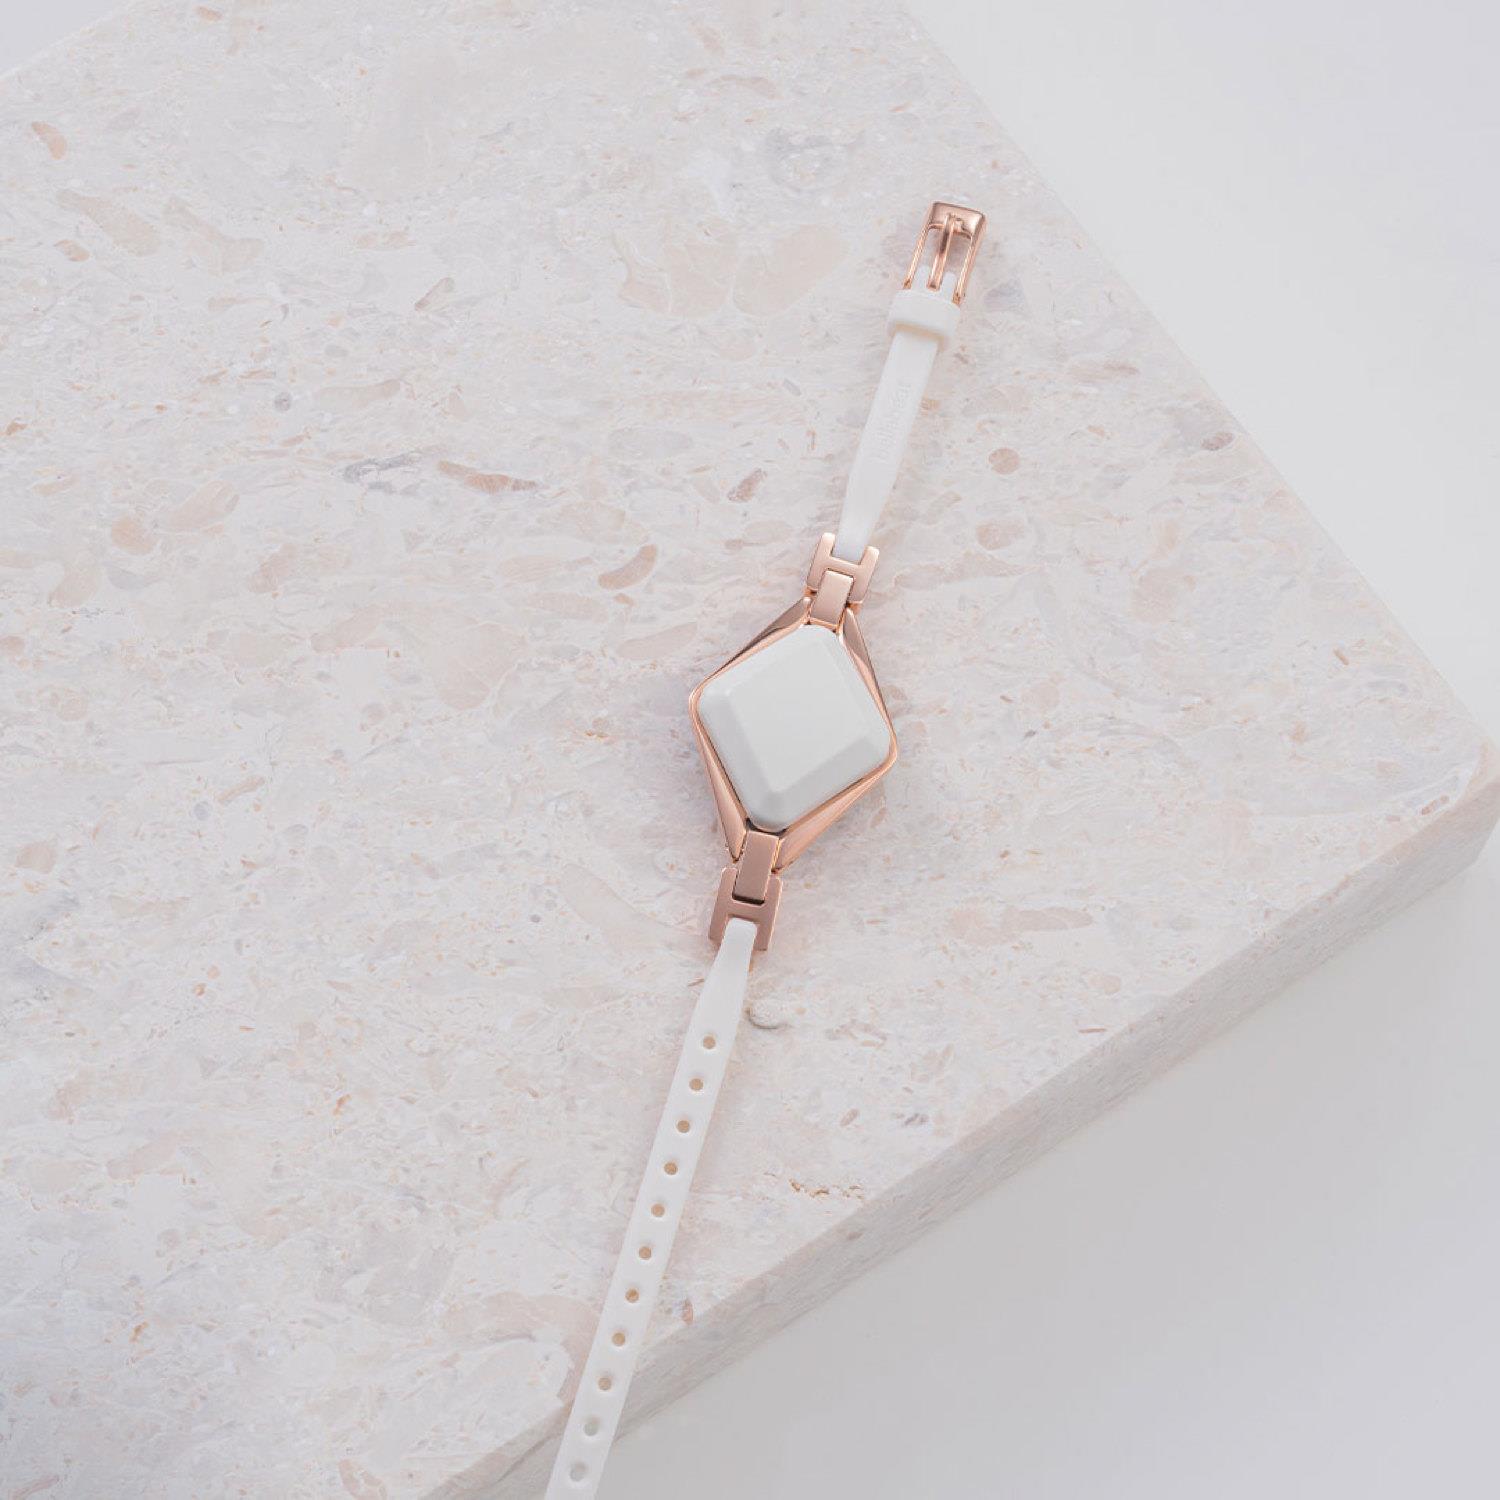 Bellabeat Ivy Snow White Gesundheitstracker Armband für Frauen - Weiss, weißer Stein